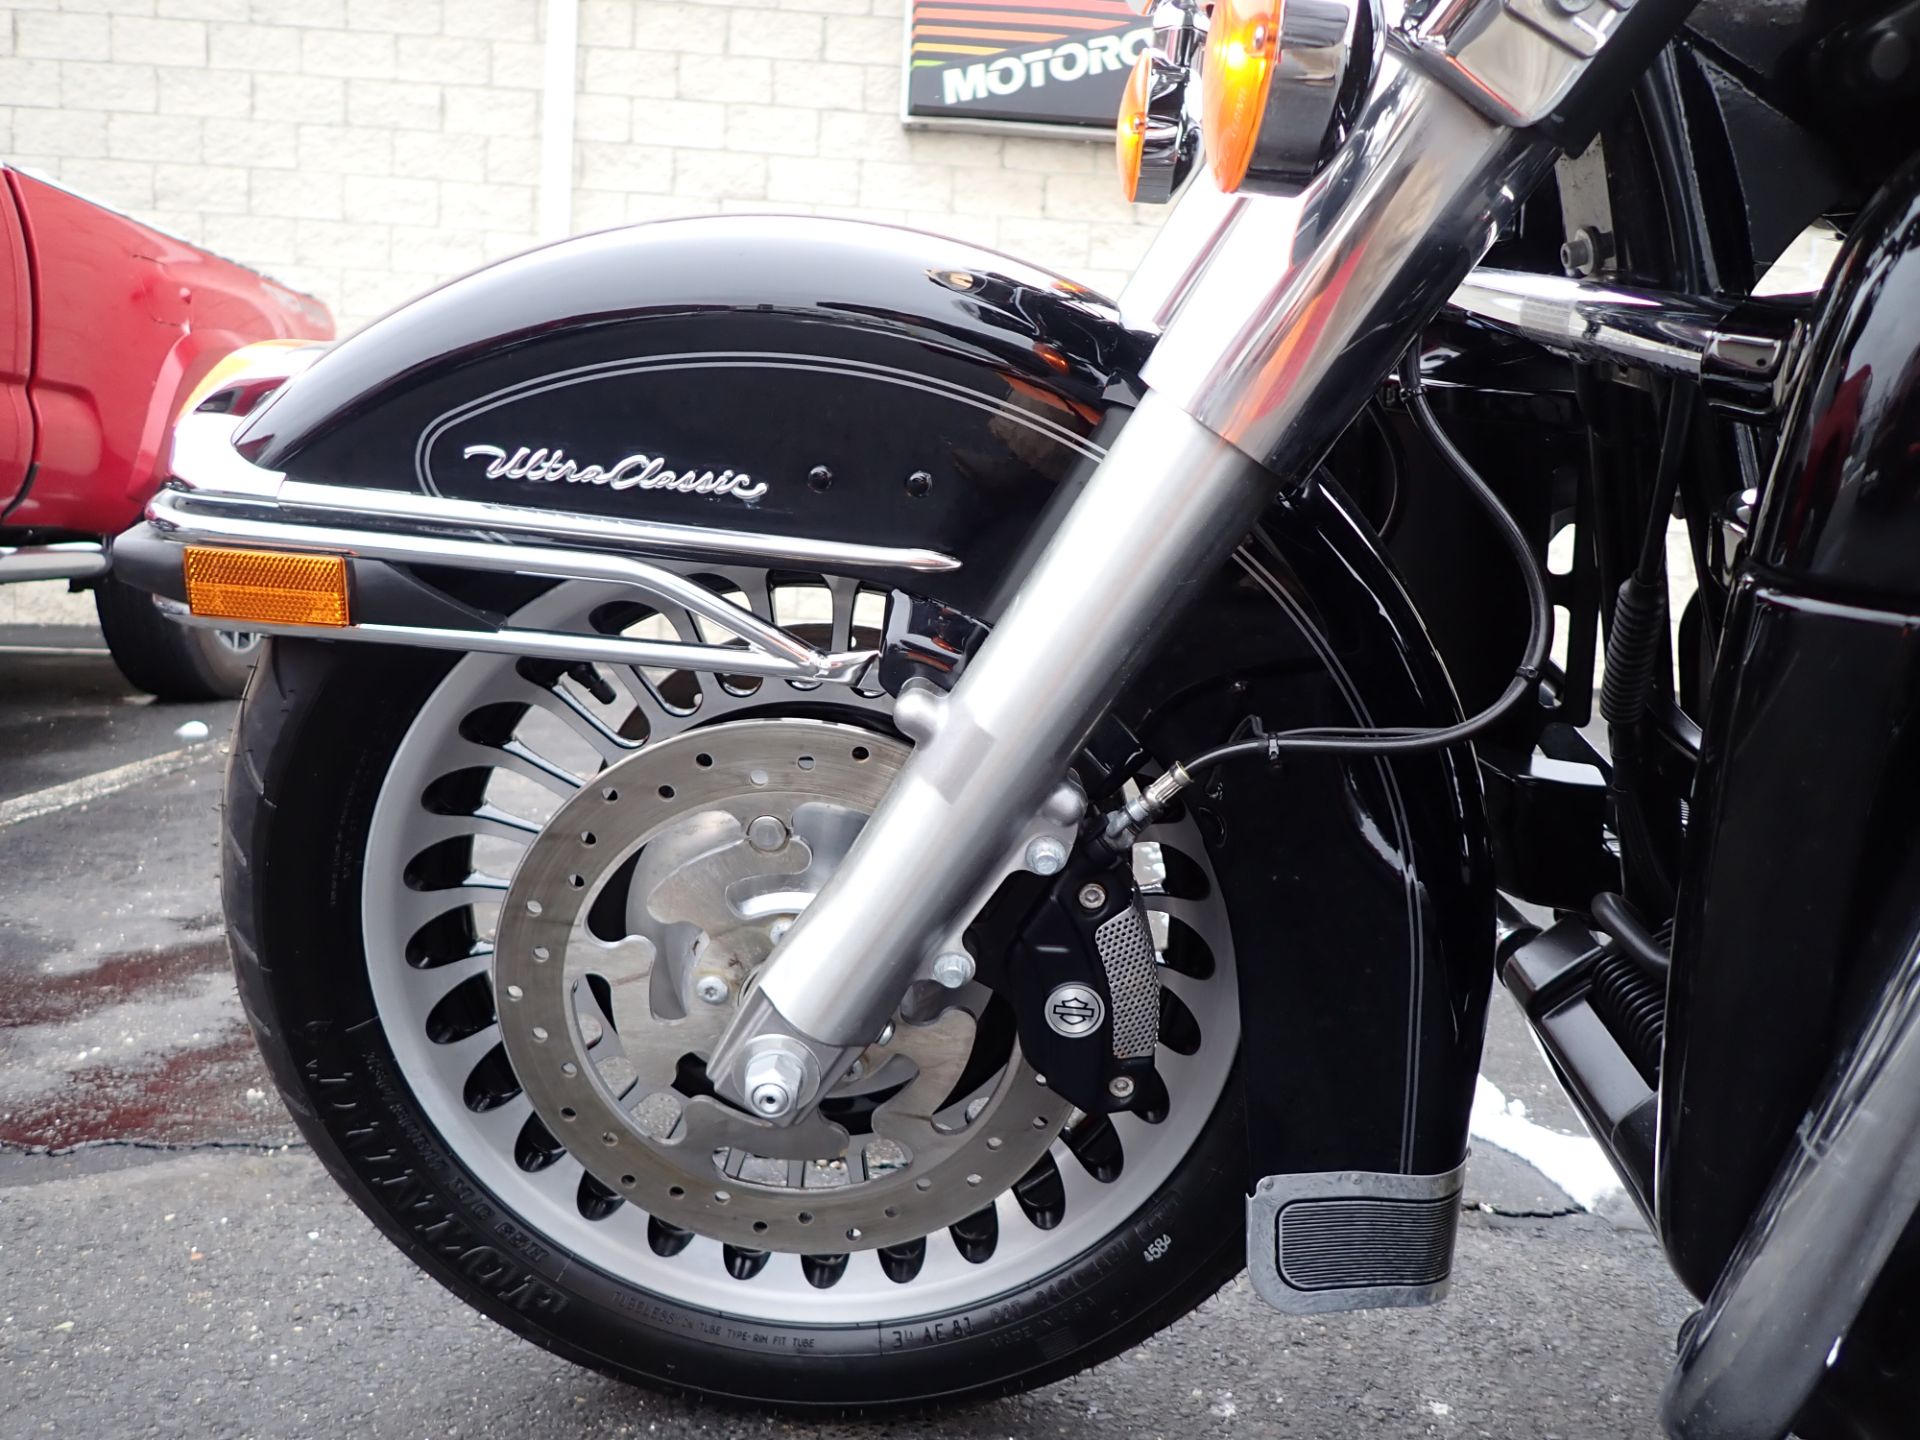 2012 Harley-Davidson Ultra Classic® Electra Glide® in Massillon, Ohio - Photo 10